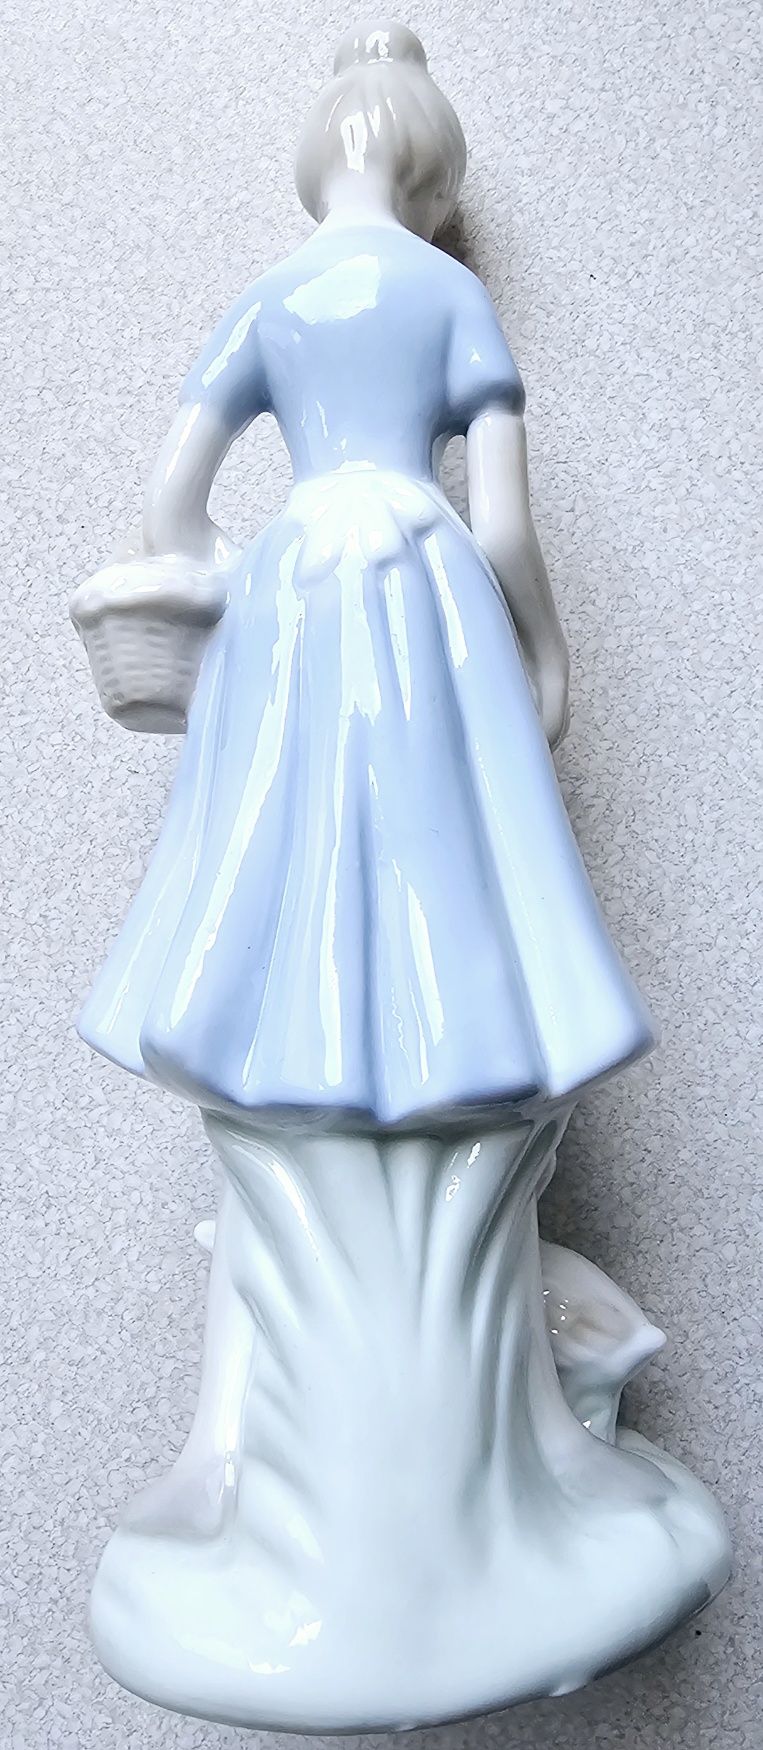 Figurka porcelanowa gąsiareczka